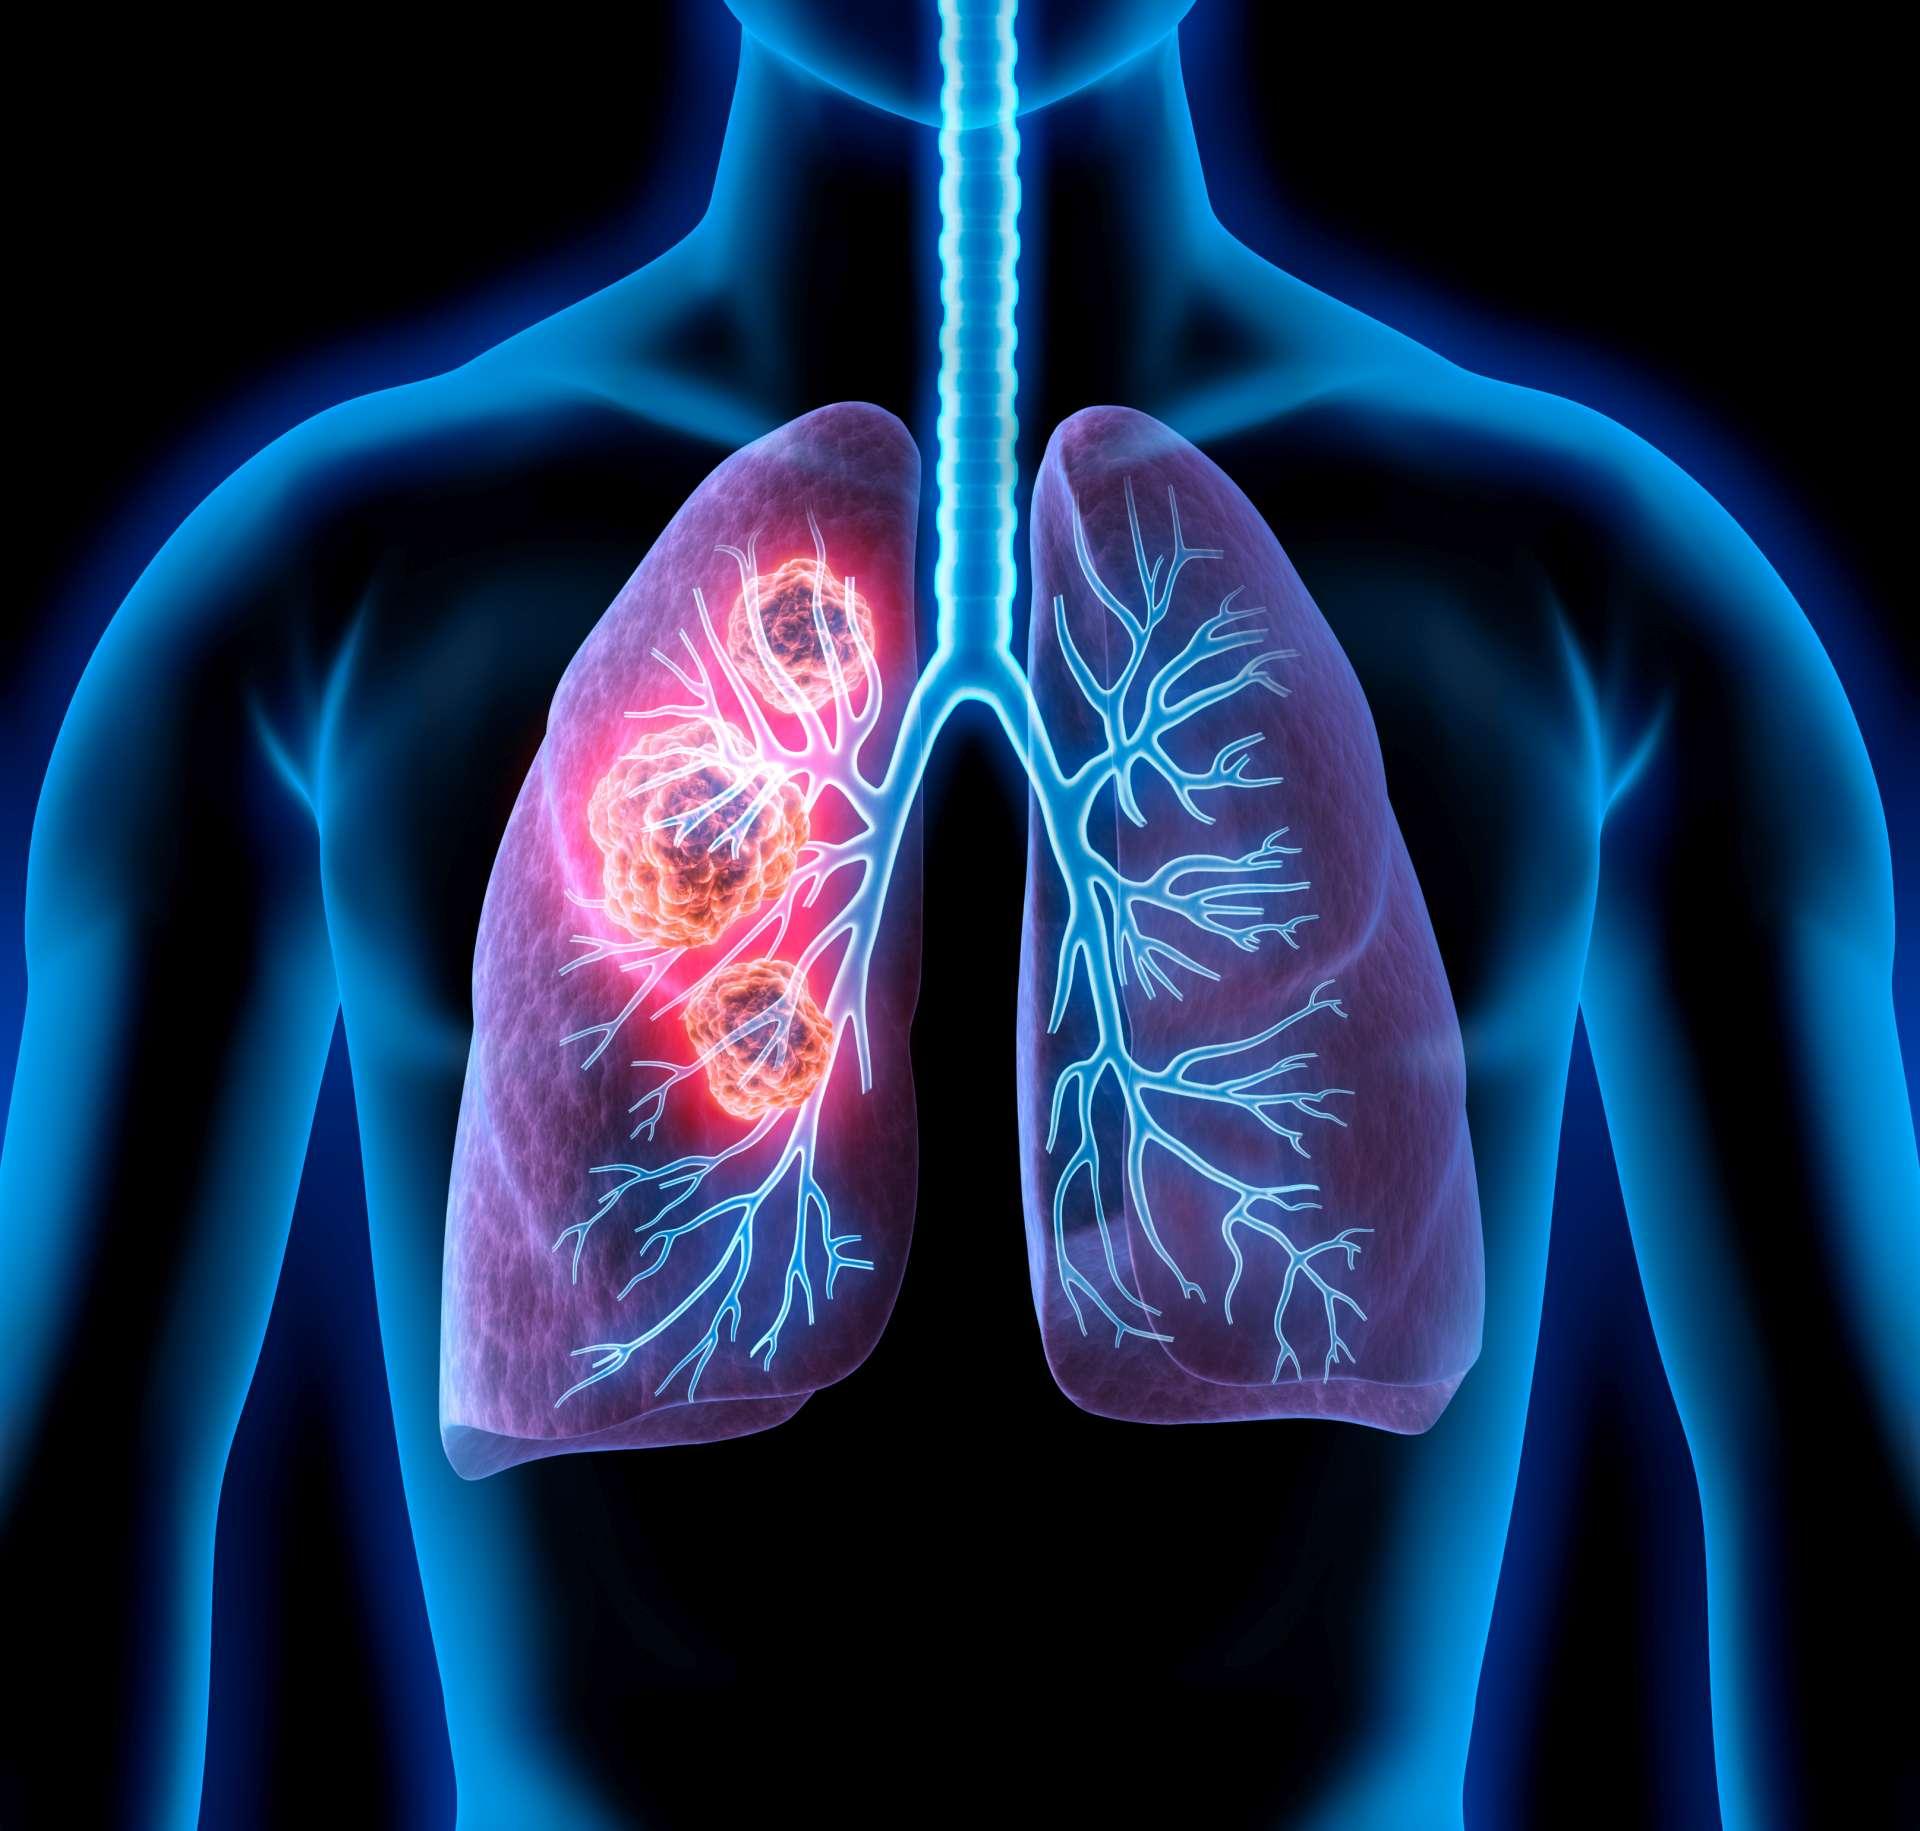 Medizinische Illustration von Lungenkrebs - Krebsgebiet in der Lunge